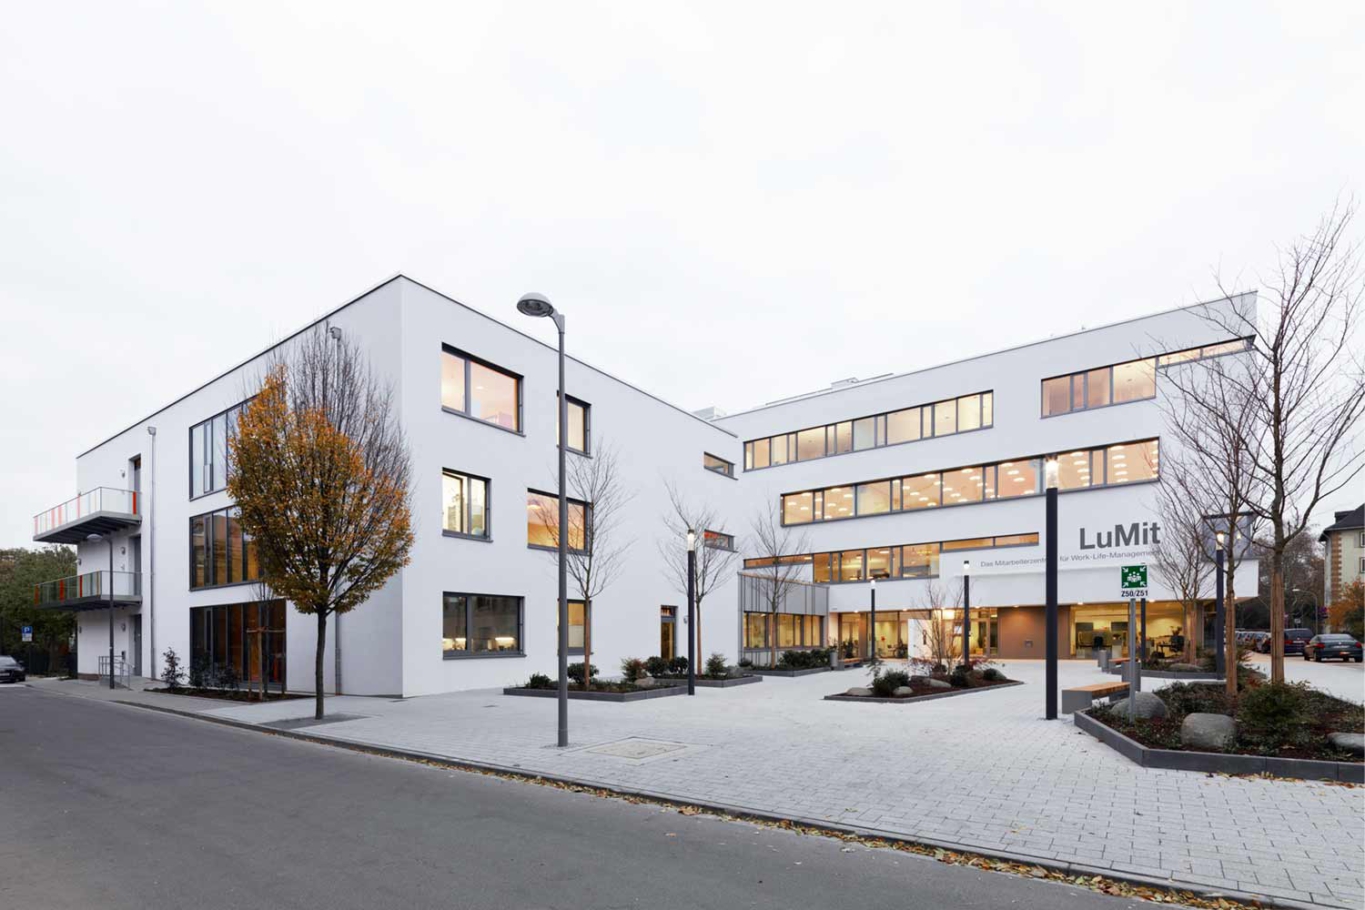 Architekturfotografie Lioba Schneider: Neubau des LUMIT-Gebäudes für BASF. Durchgehende Fensterbänder strukturieren den vierstöckigen weissen Baukörper. Ansicht von der Strasse bei Dämmerung.